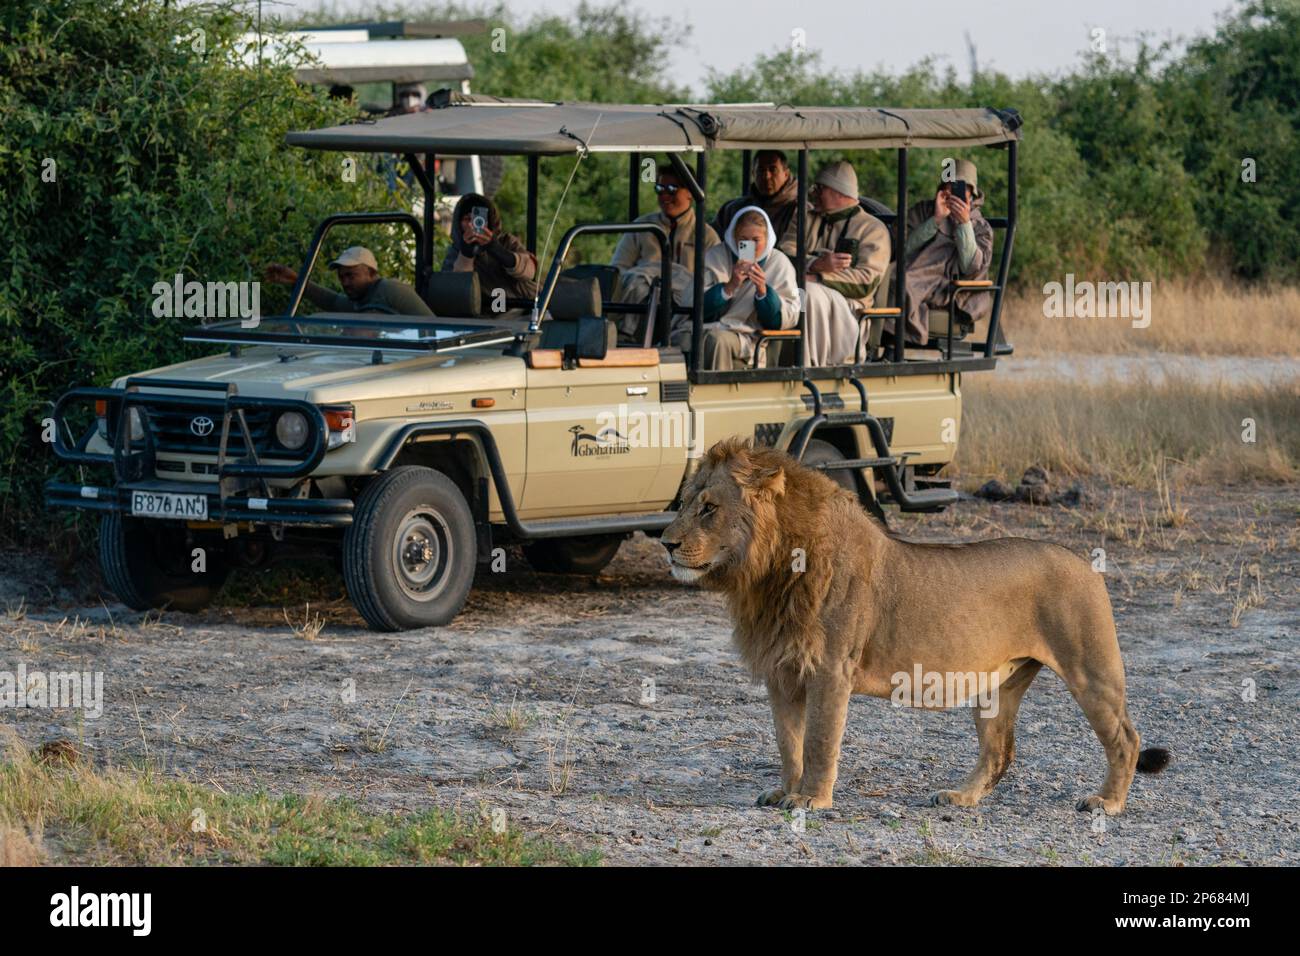 Tourists in a safari vehicle watching a lion (Panthera leo), Savuti, Chobe National Park, Botswana, Africa Stock Photo